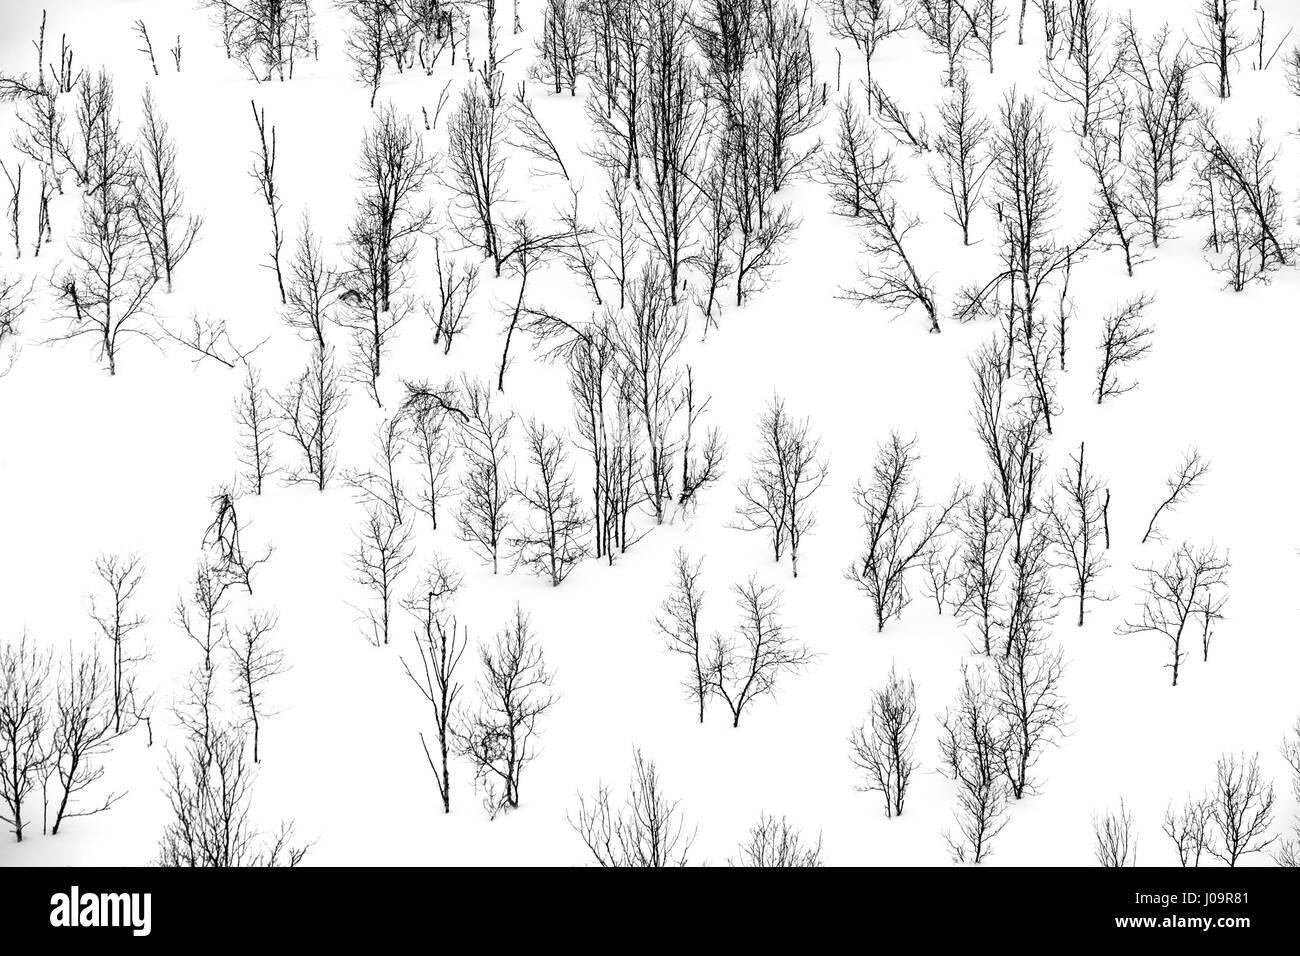 Arbres dans un monochrome,paysage d'hiver dans le nord de la Norvège Banque D'Images